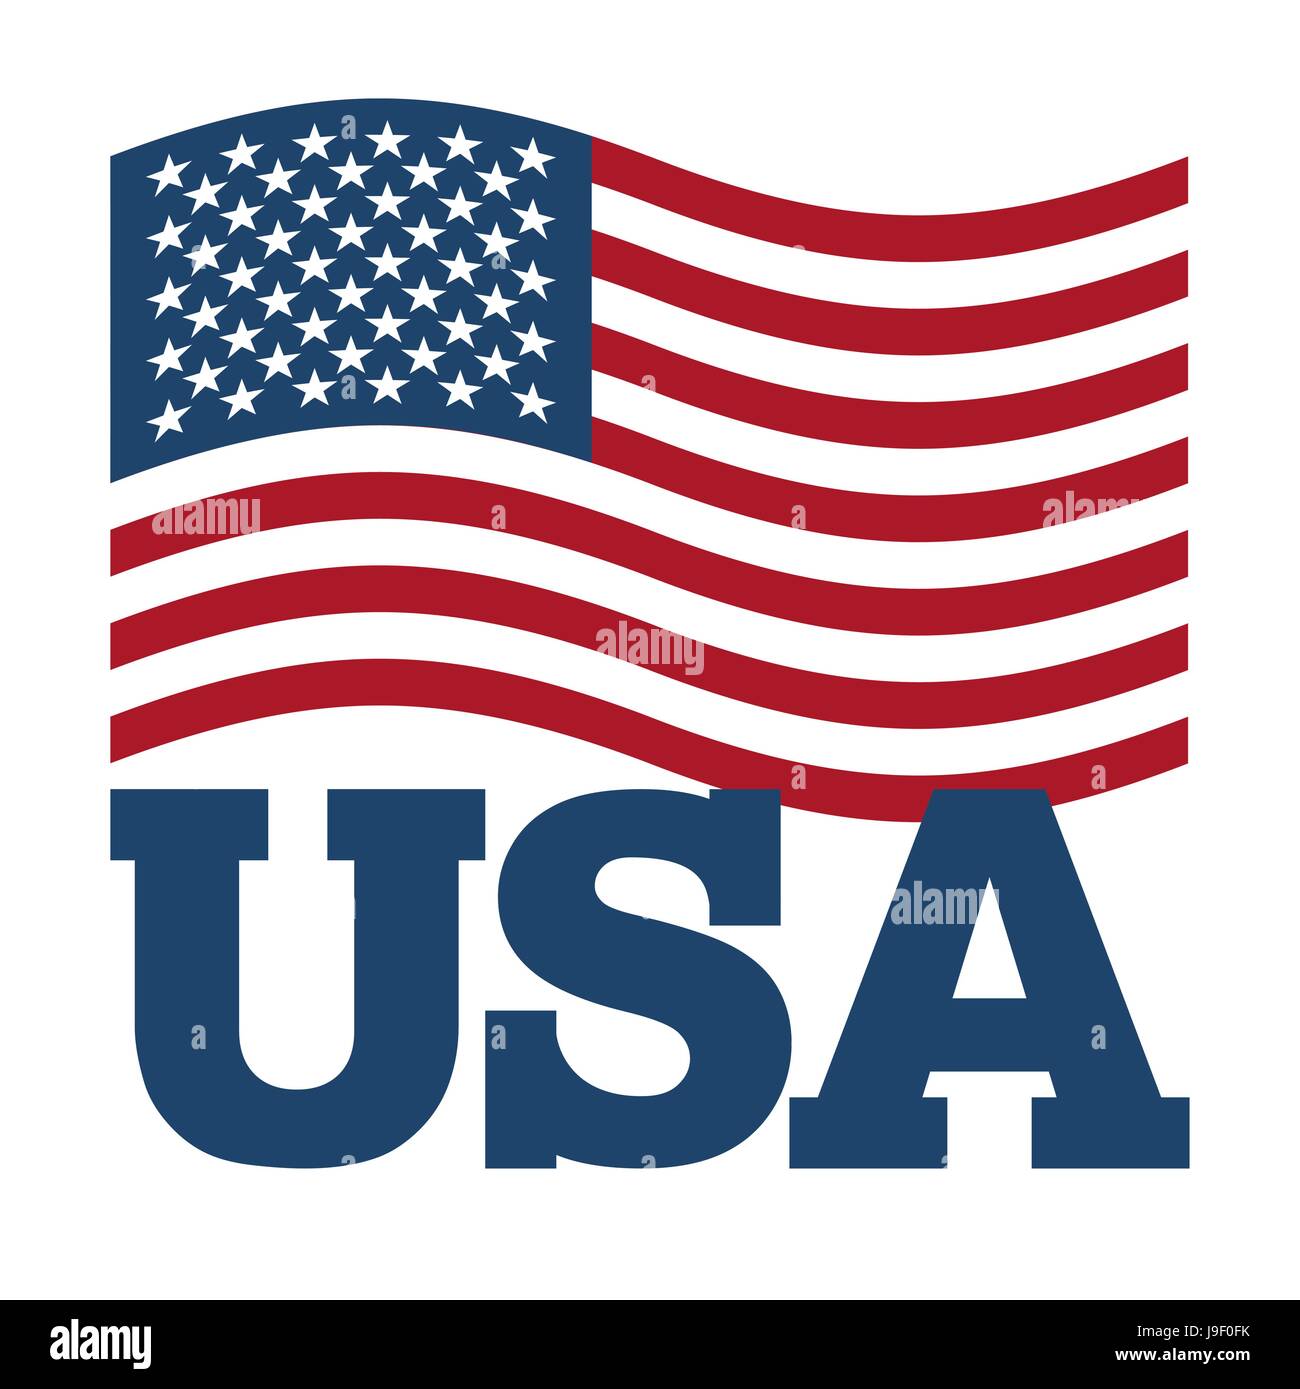 Flagge USA. Entwicklung von Amerika Flagge auf weißem Hintergrund.  Patriotische Darstellung. Nationalen Staatssymbol Land Amerikas. Zeichen-USA  Stock-Vektorgrafik - Alamy